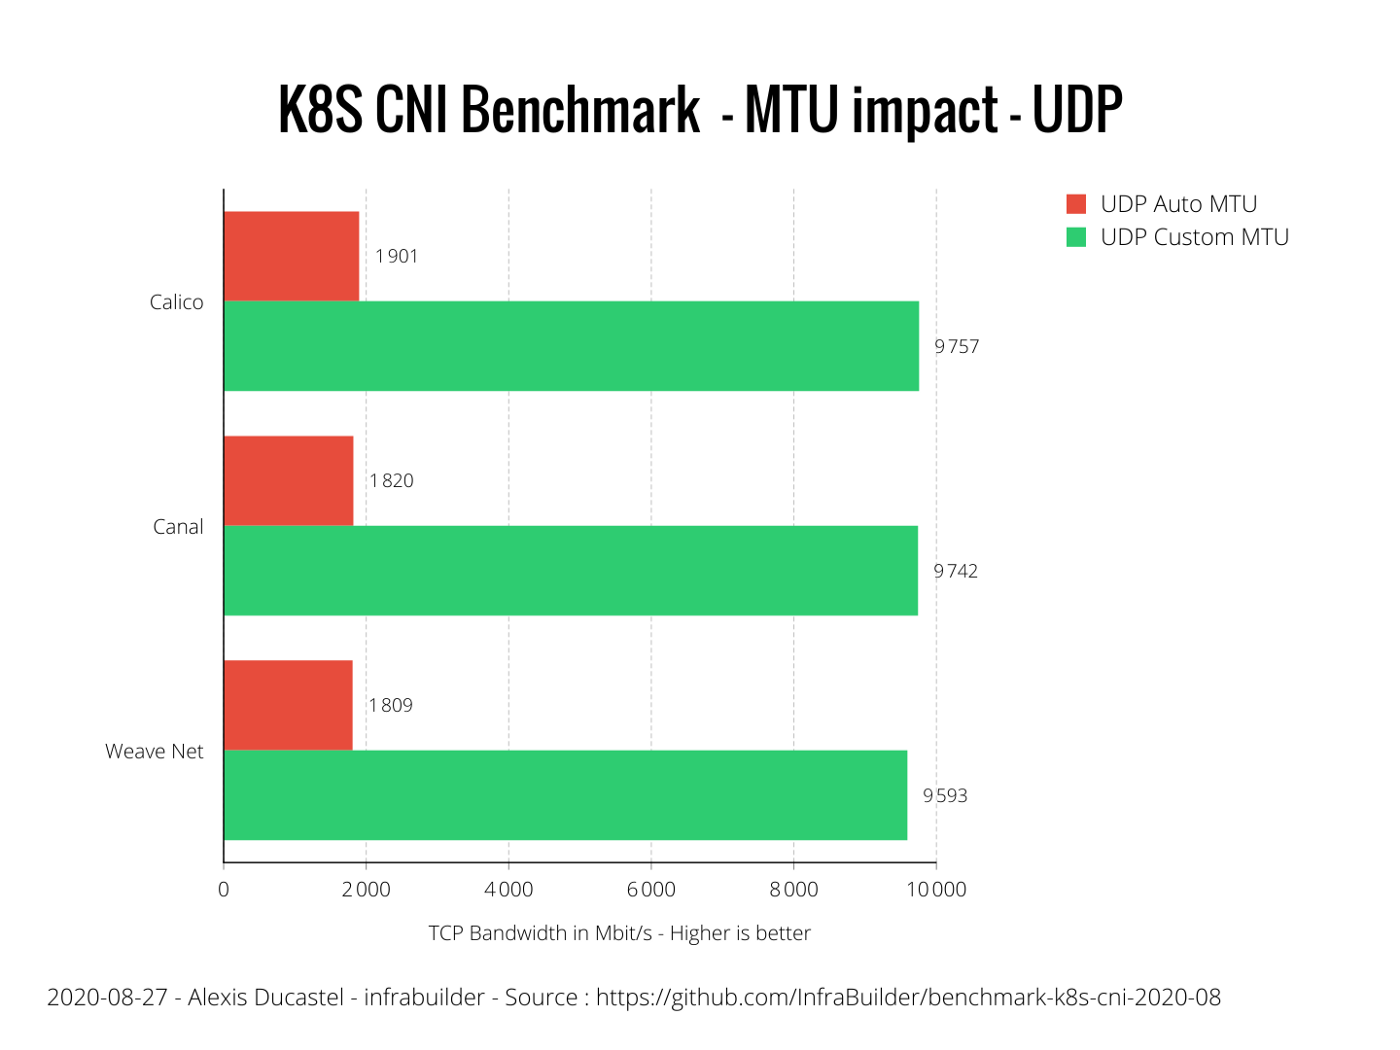 MTU Impact on UDP performance